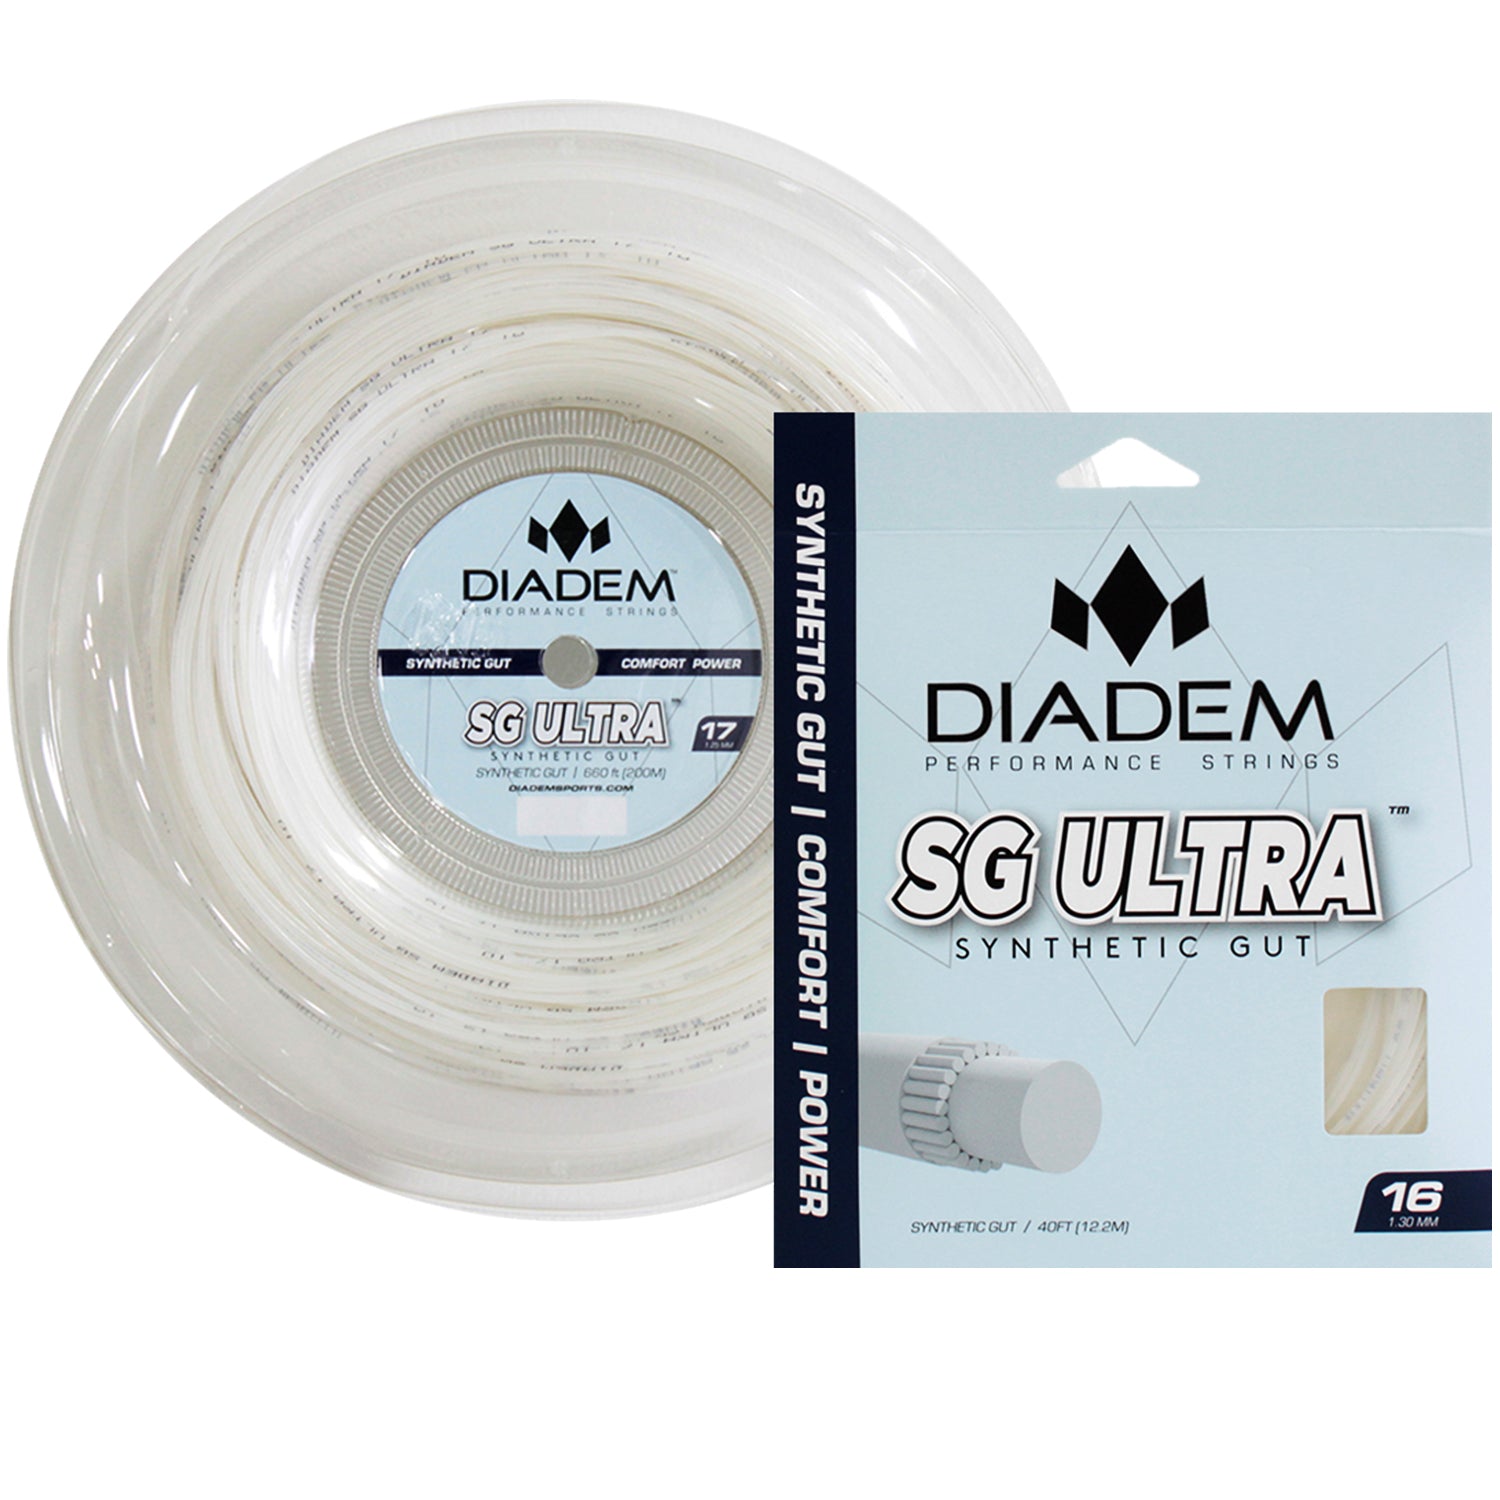 Diadem SG Ultra Tennis Racquet String, Reel 660ft/200m